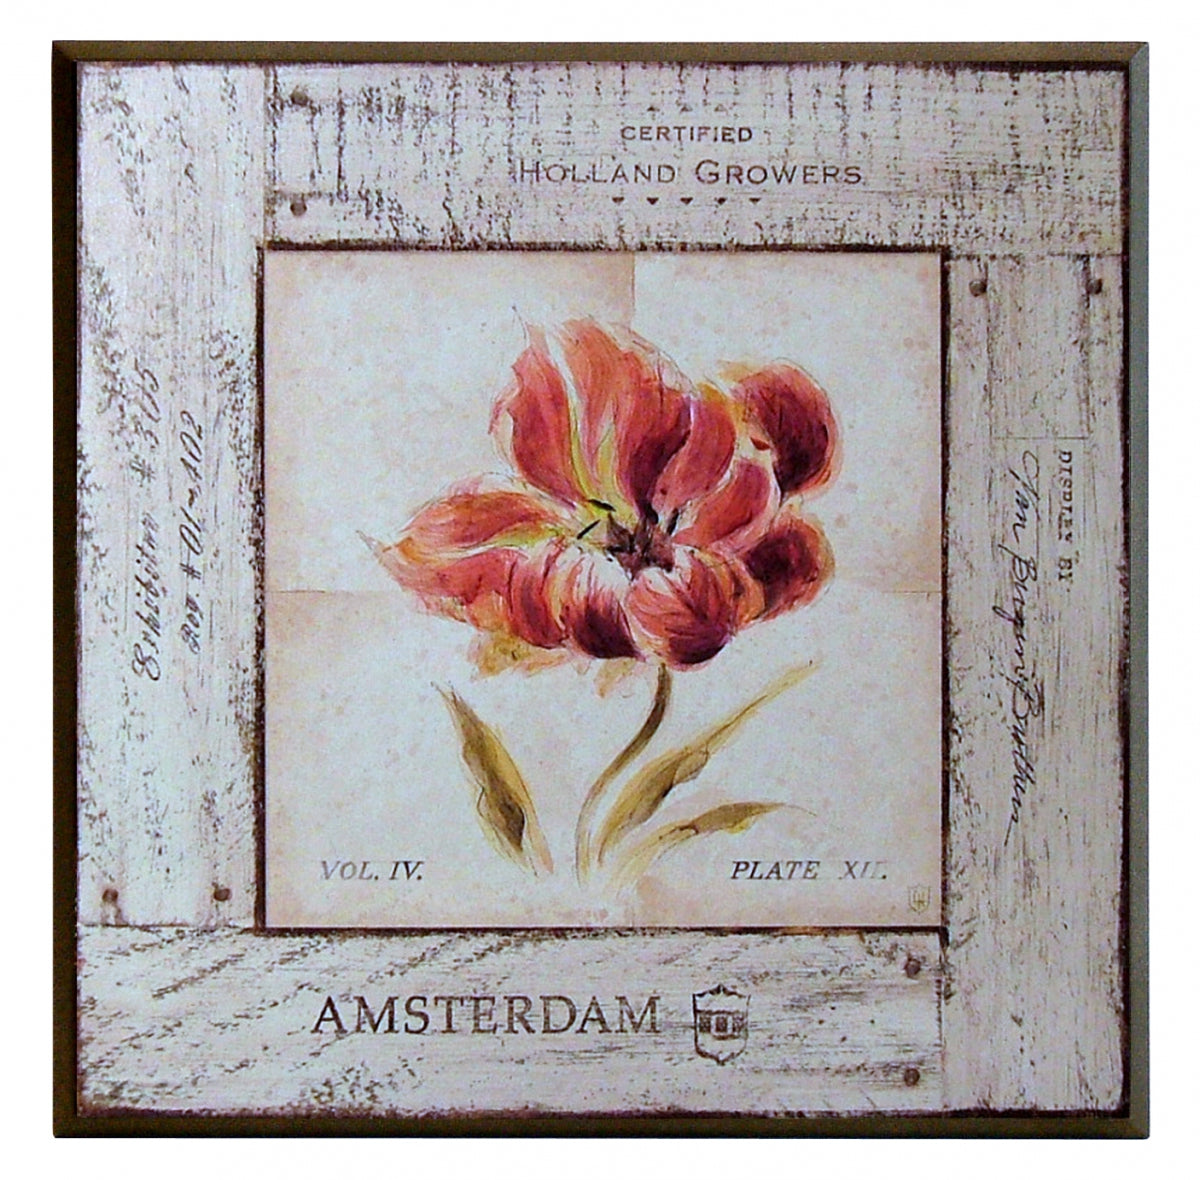 Obraz - Kwiaty na bielonych deskach, Tulipan - reprodukcja A3697 na płycie 41x41 cm. - Obrazy Reprodukcje Ramy | ergopaul.pl